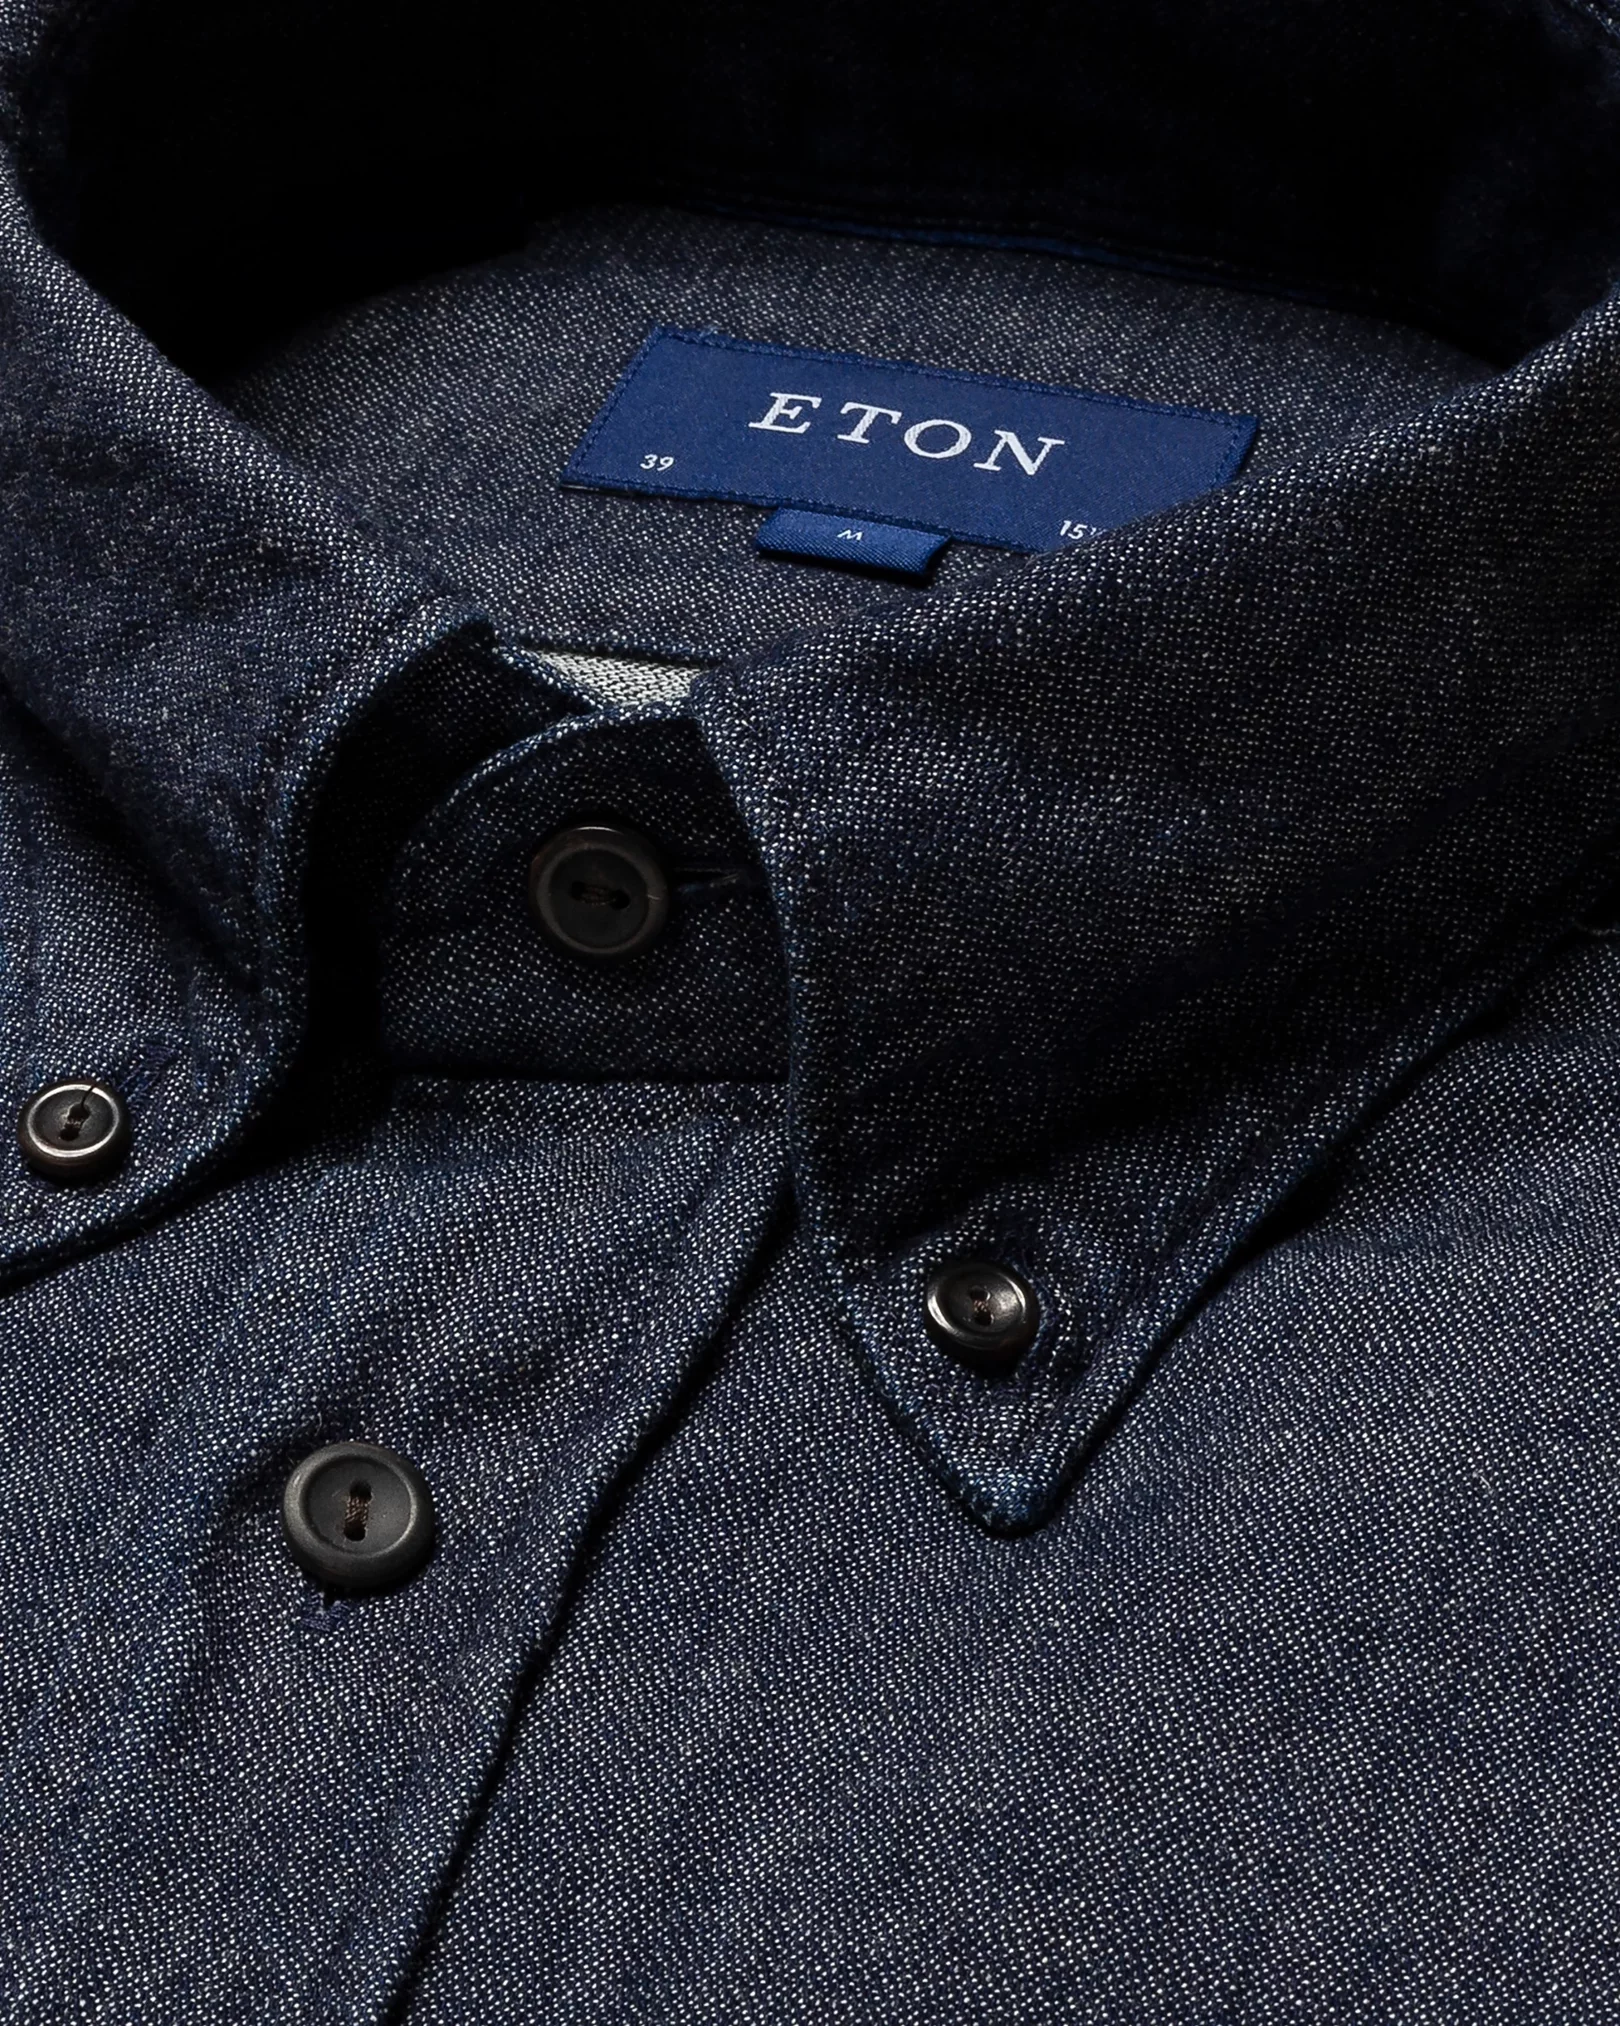 Eton - black indigo button down